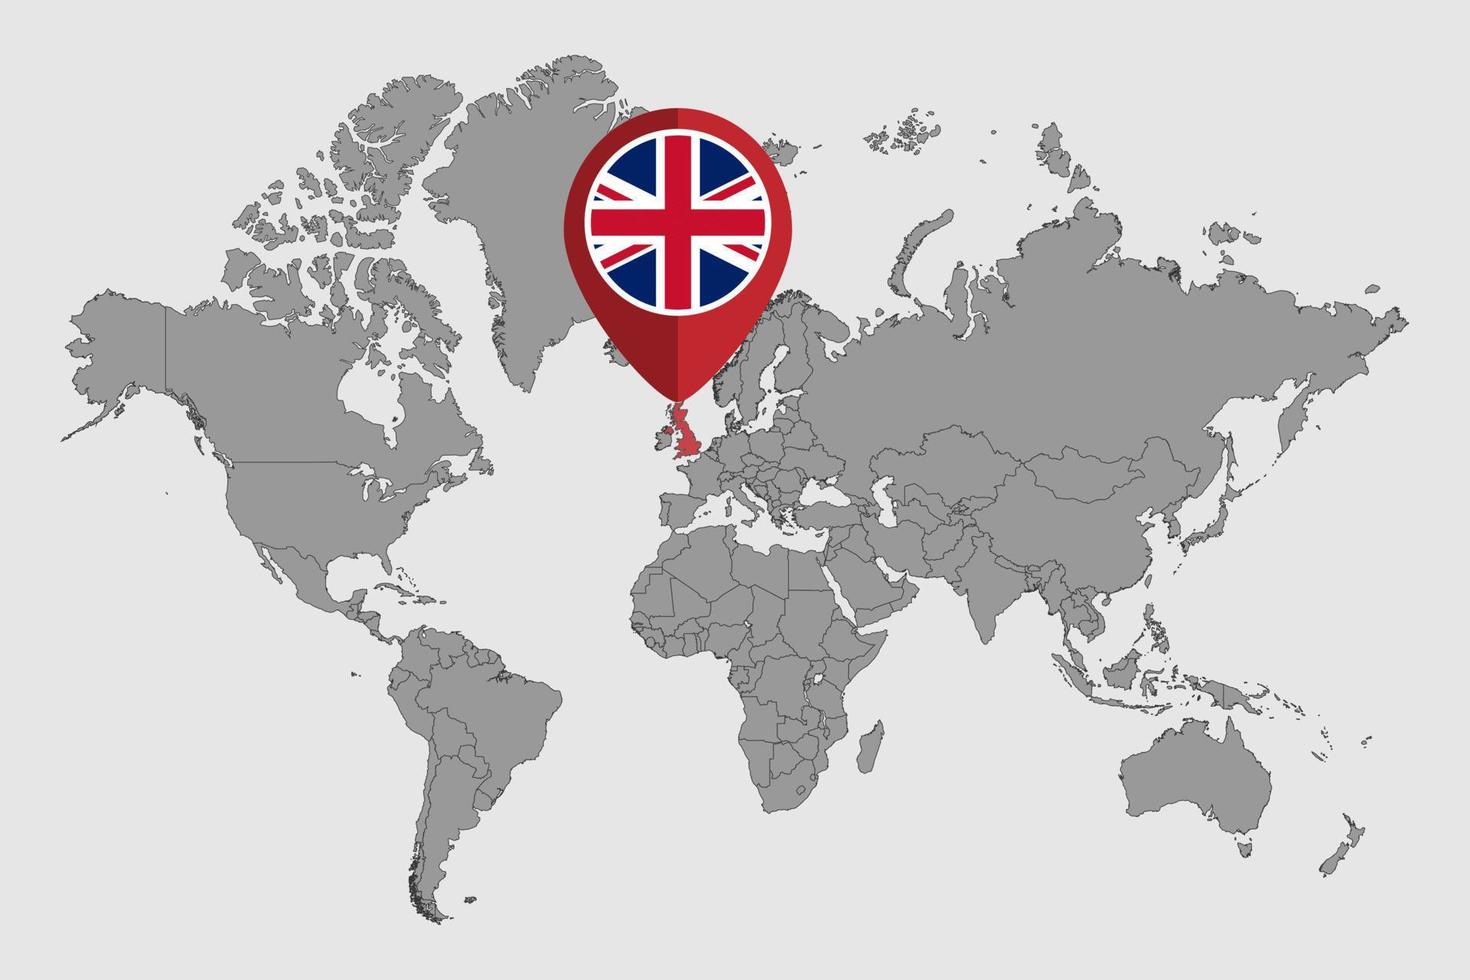 épingler la carte avec le drapeau britannique sur la carte du monde. illustration vectorielle. vecteur